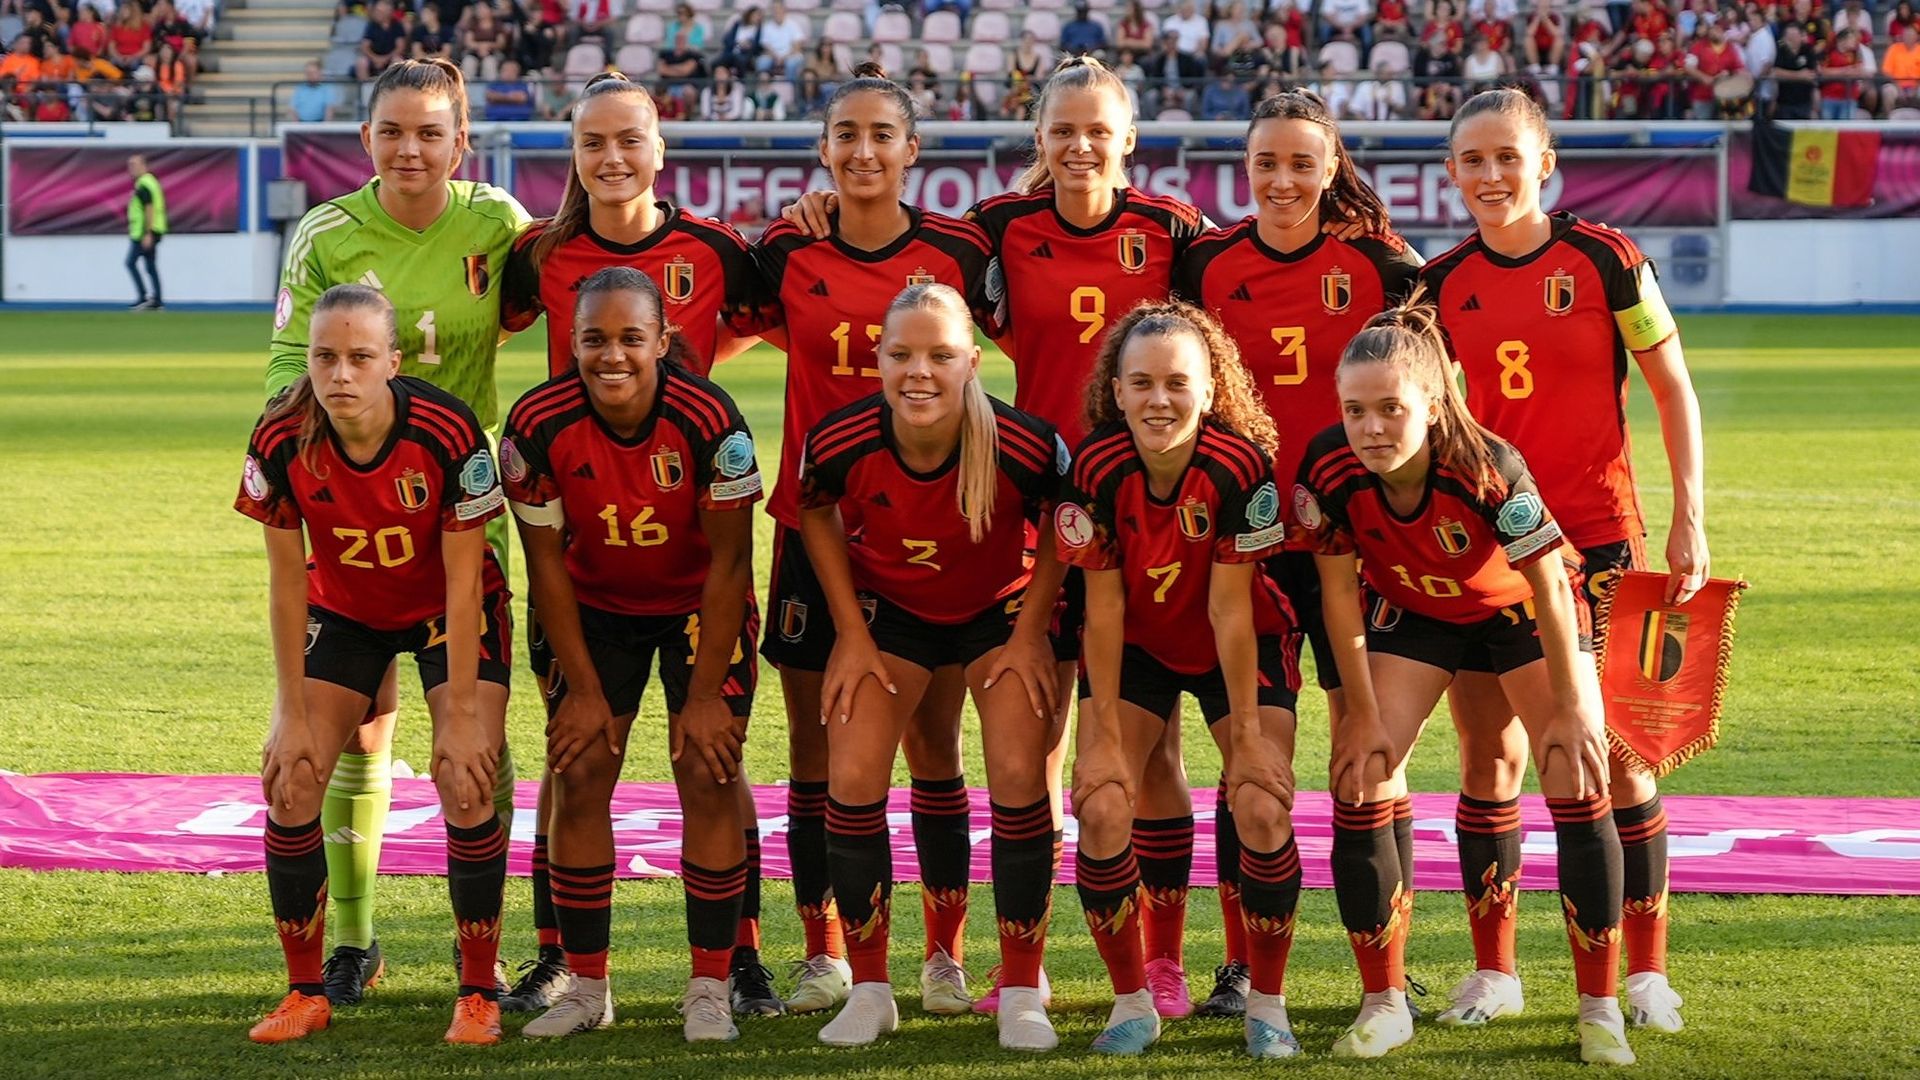 Campionato Under 19 Femminile UEFA: Leggermente ispirato in attacco, il Belgio si inchina con decisione contro l’Olanda